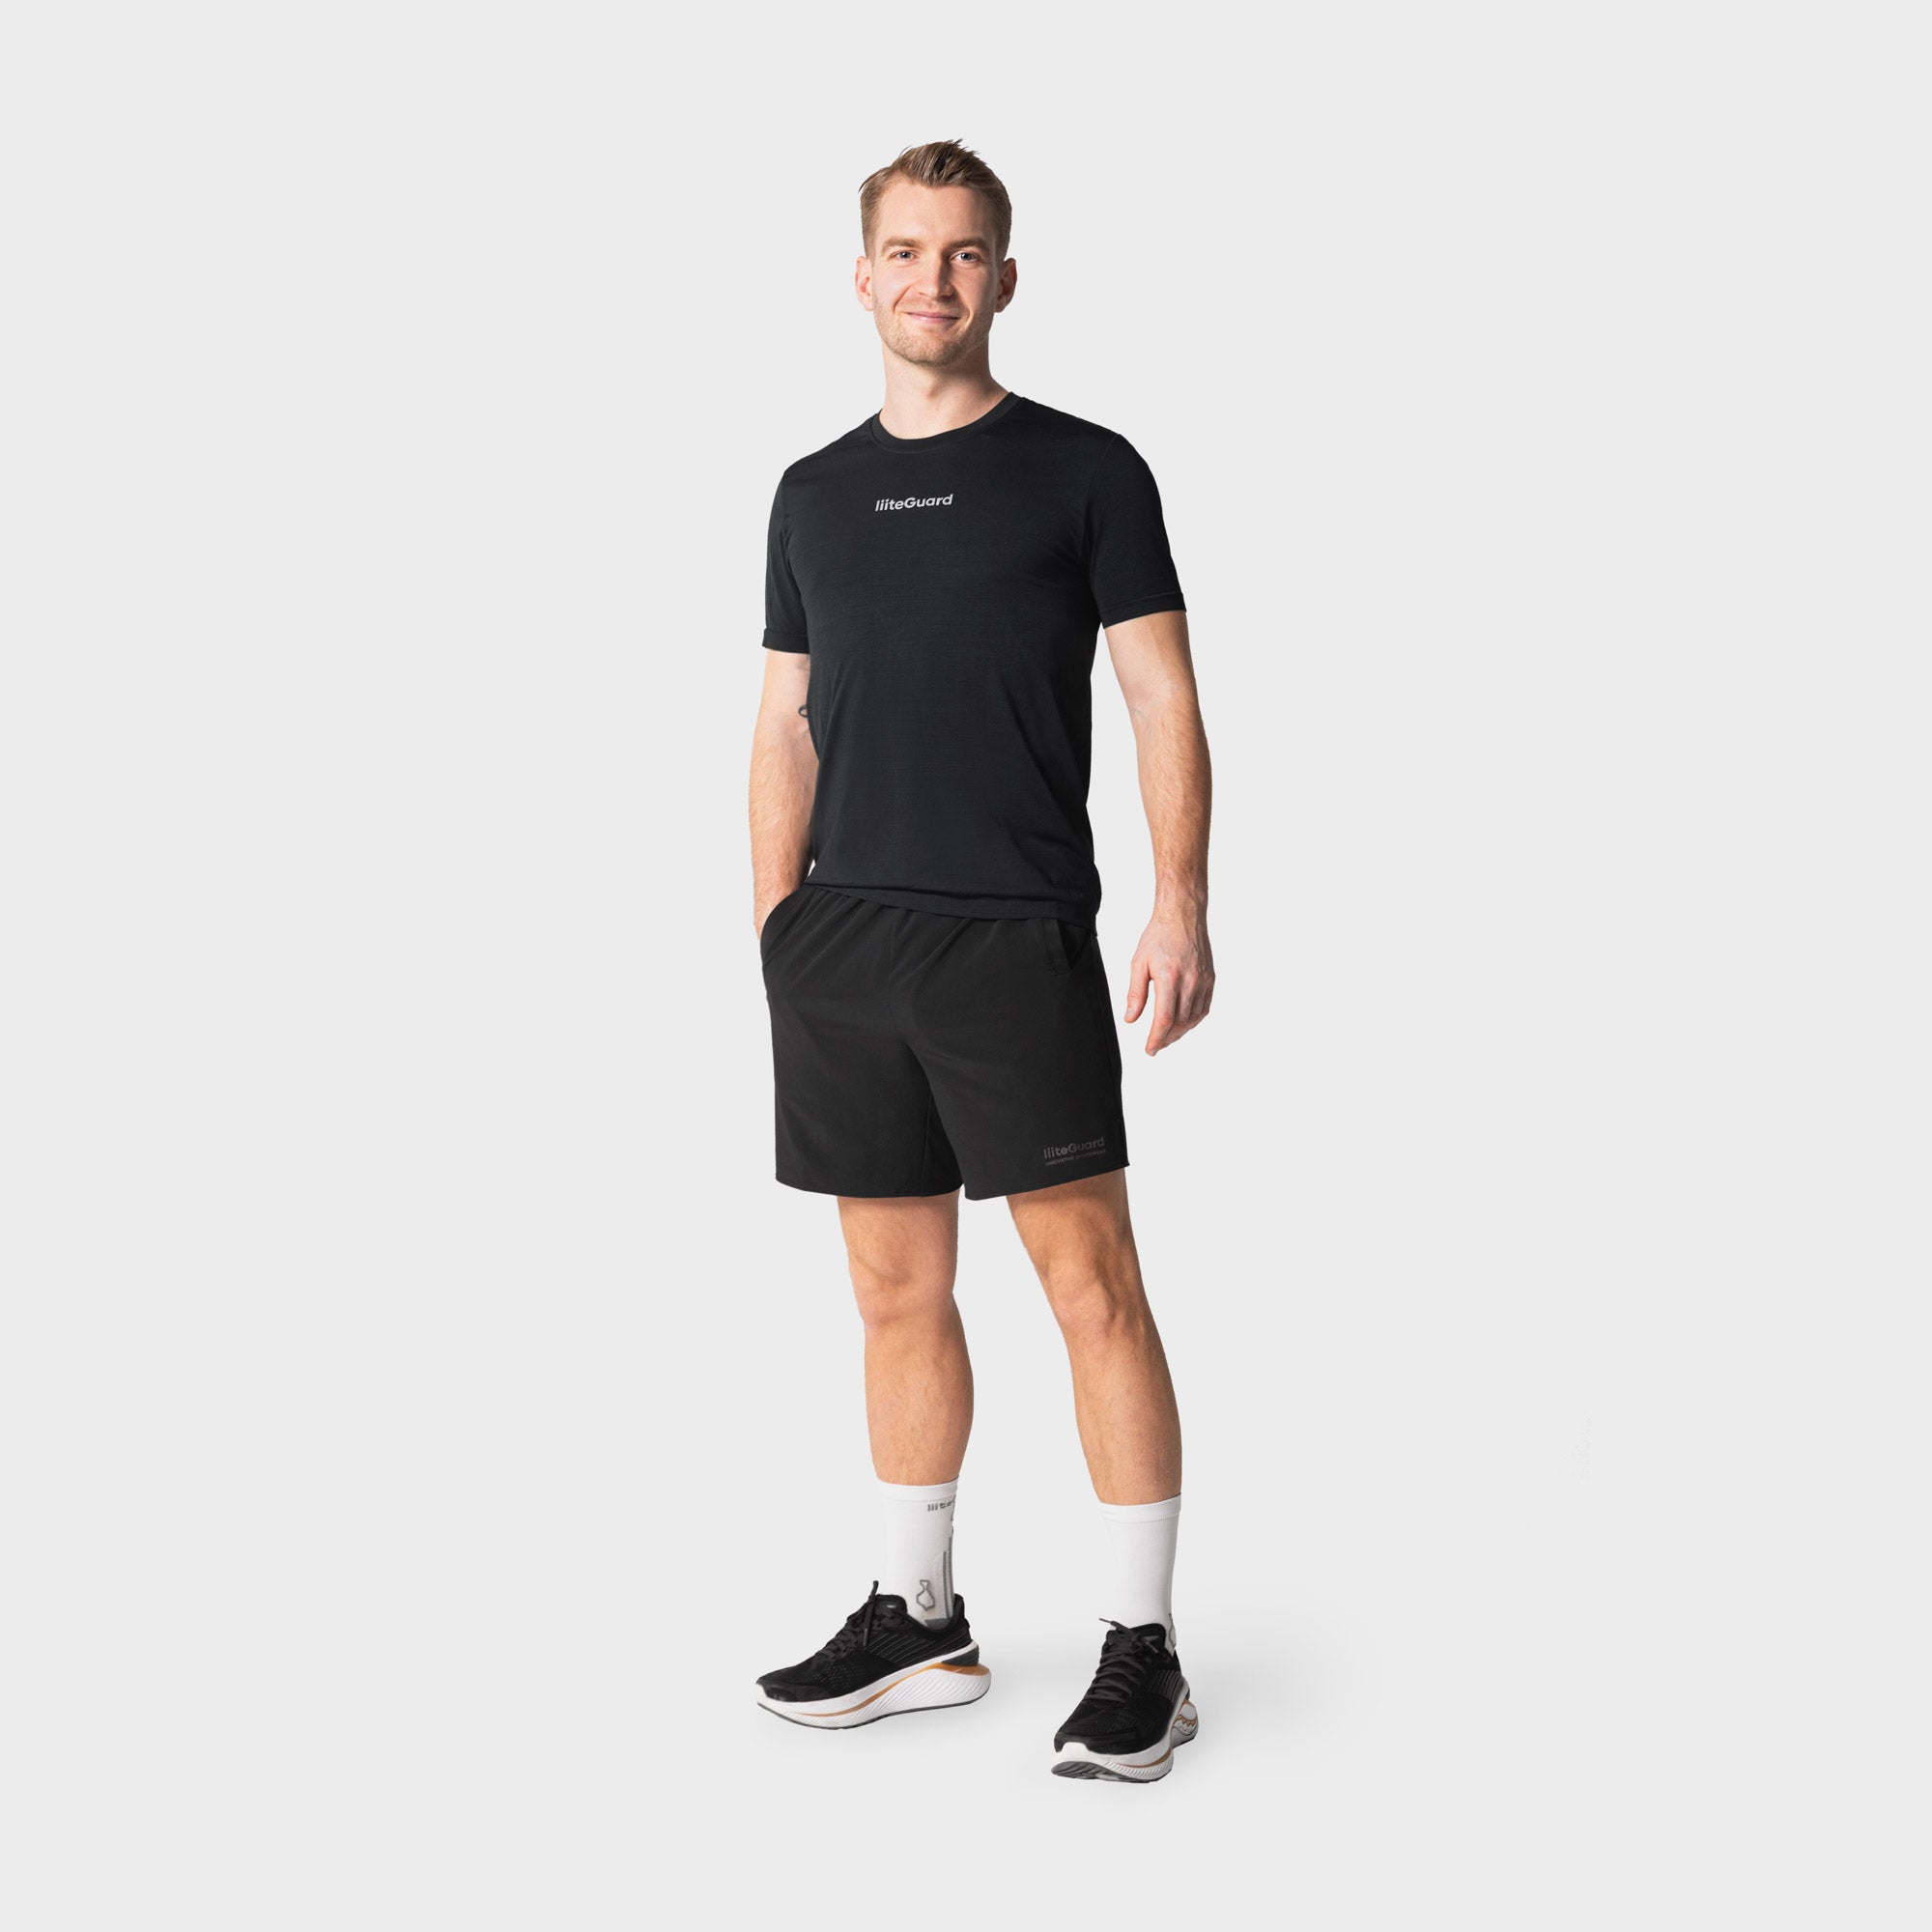 Liiteguard RE-LIITE SHORTS (MEN) Shorts BLACK